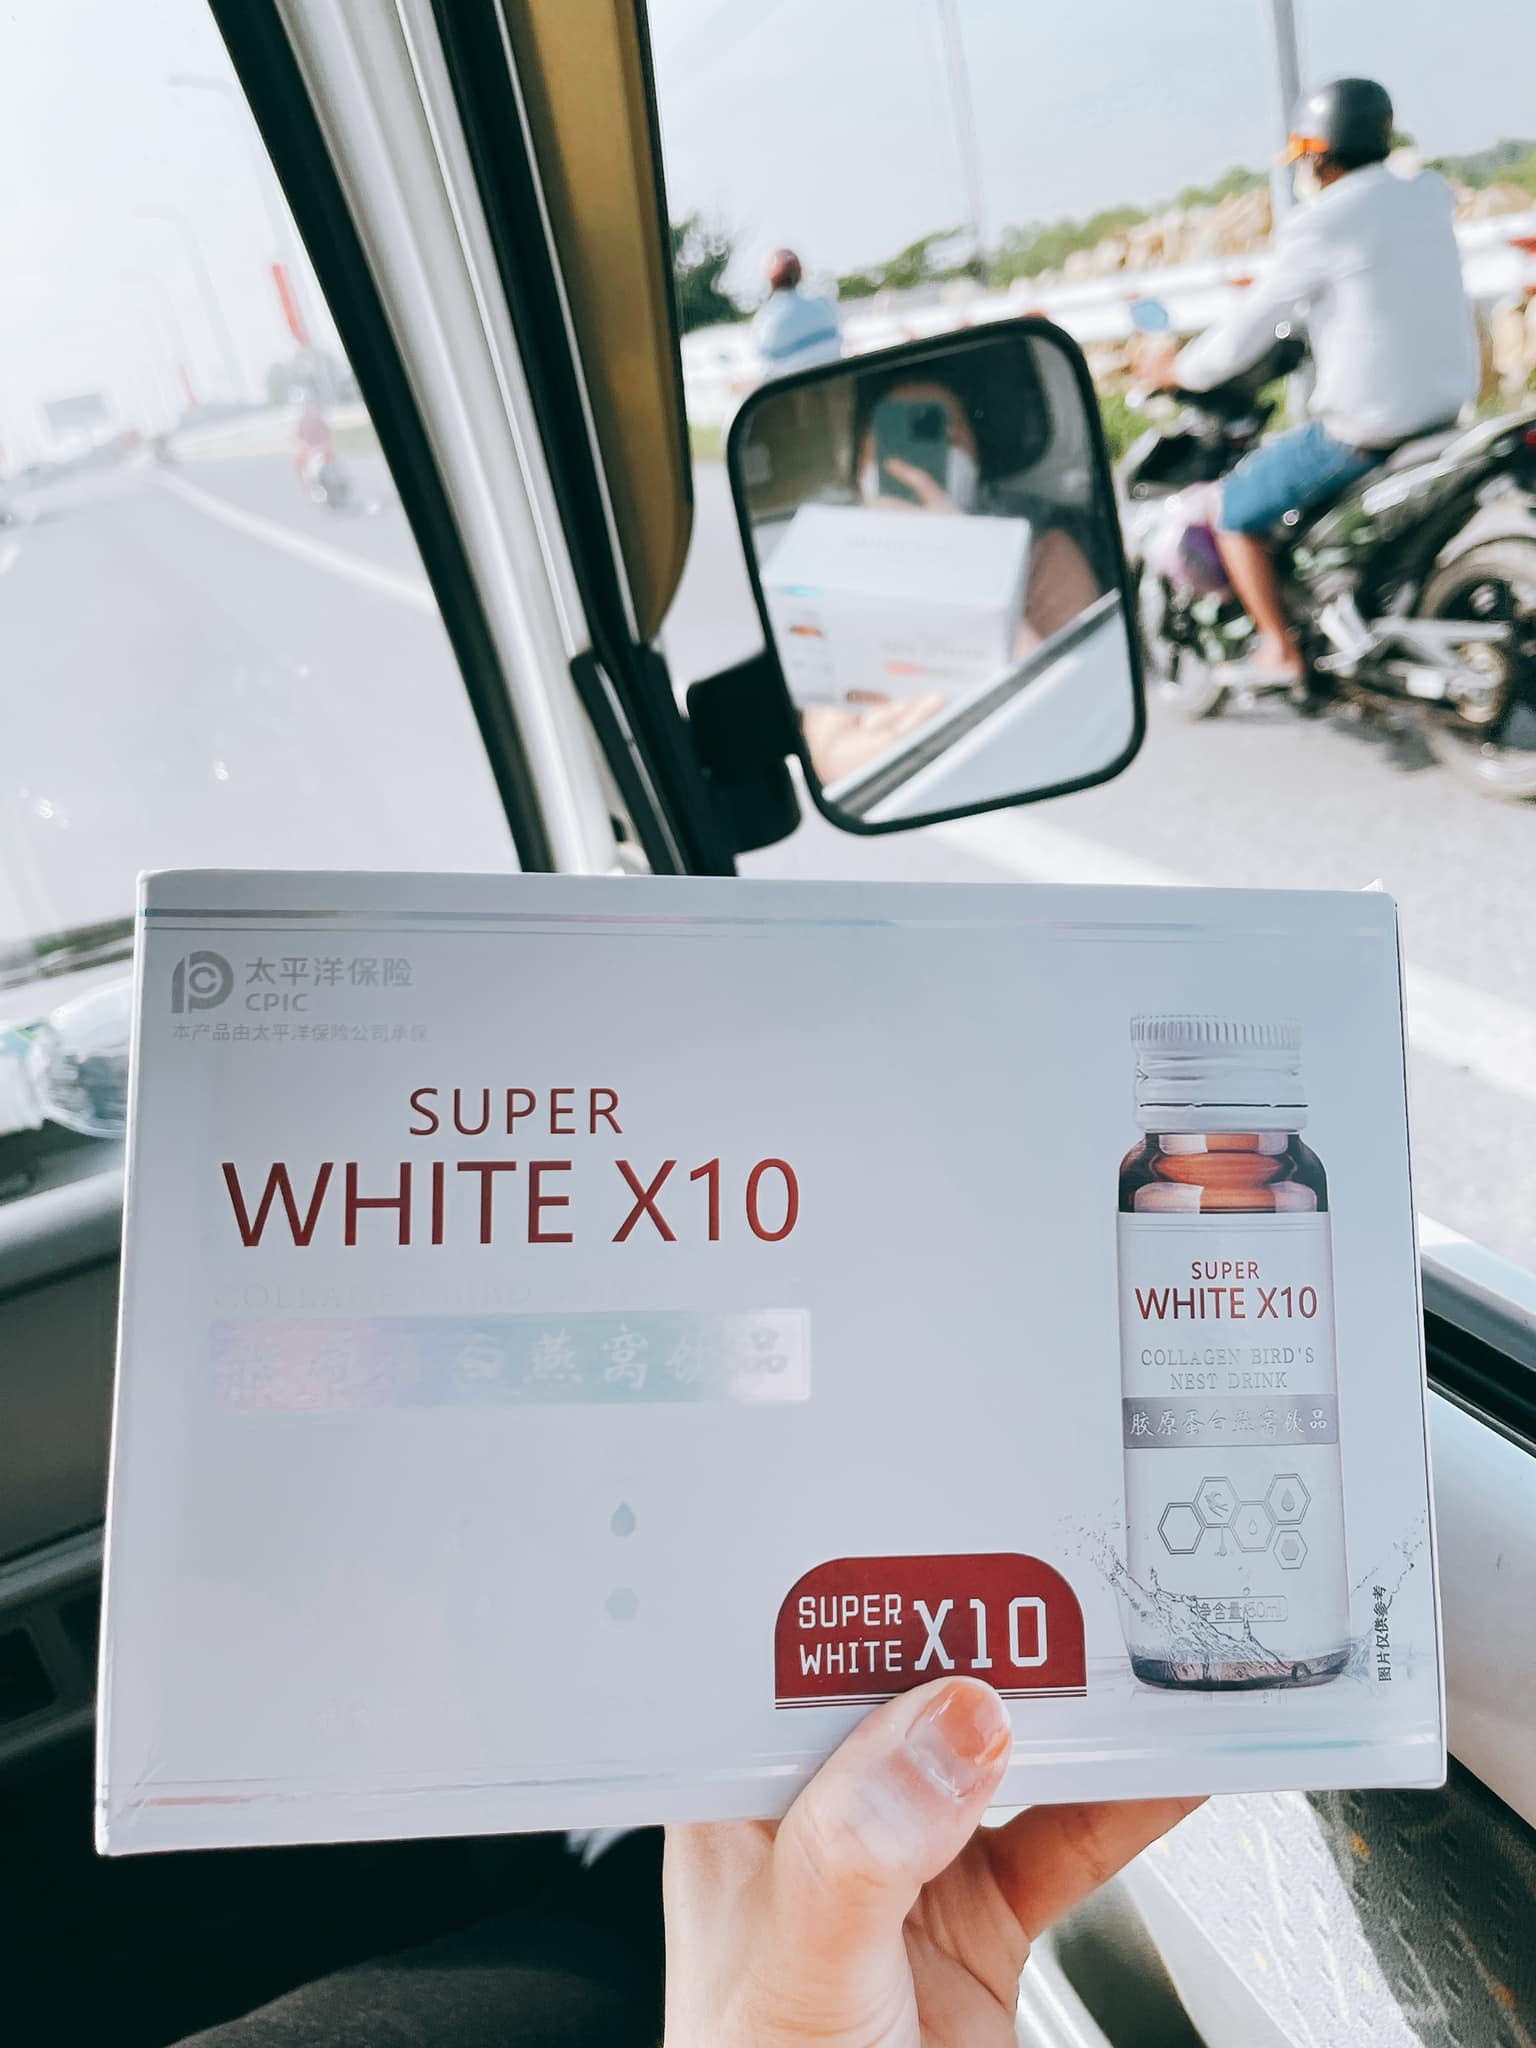 Nước uống Collagen yến giúp trắng da Super White X10 chính hãng